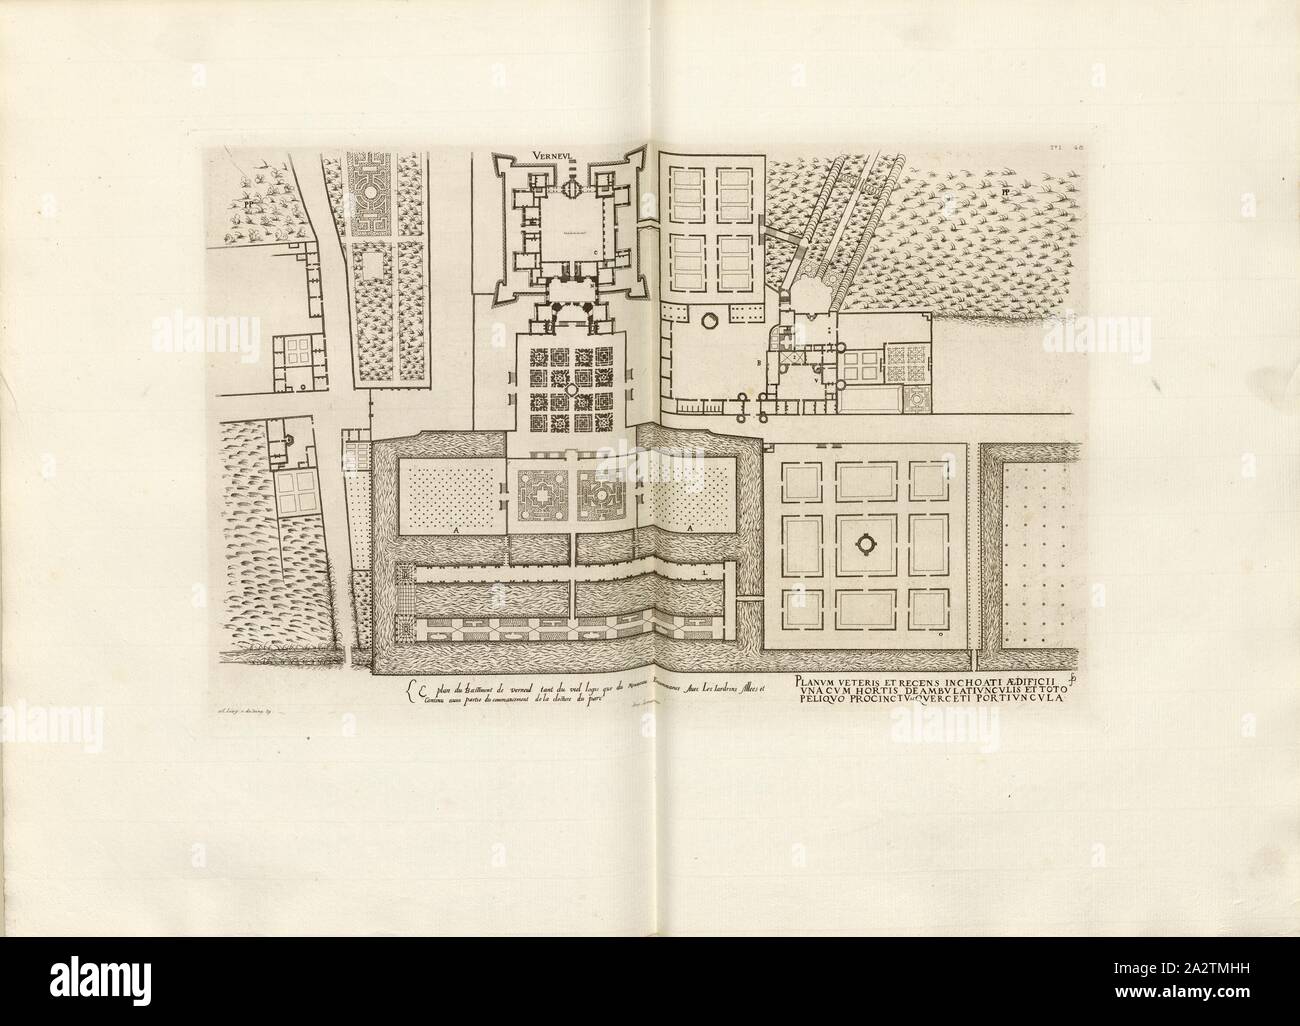 The plan of the bastion of veneul so much of the old house as the New Incommence With The Yardrins Allees ..., Floor plan of the Château de Verneuil-en-Halatte in France, Signed: FD; Imp. Lemercier; A. Levy, Fig. 50, T. 1. 48, Cerceau, Jacques Androuet du (del.); Faure-Dujarric, Pierre-Lucien (sc.); Imprimerie Lemercier (imp.); Levy, A. (ed.), 1868, Jacques Androuet du Cerceau; Hippolyte A. Destailleur: Les plus excellents bastiments de France. Paris: A. Lévy, Libraire-Editeur, M DCCC LXVIII - M DCCC LXX. [1868-1870 Stock Photo